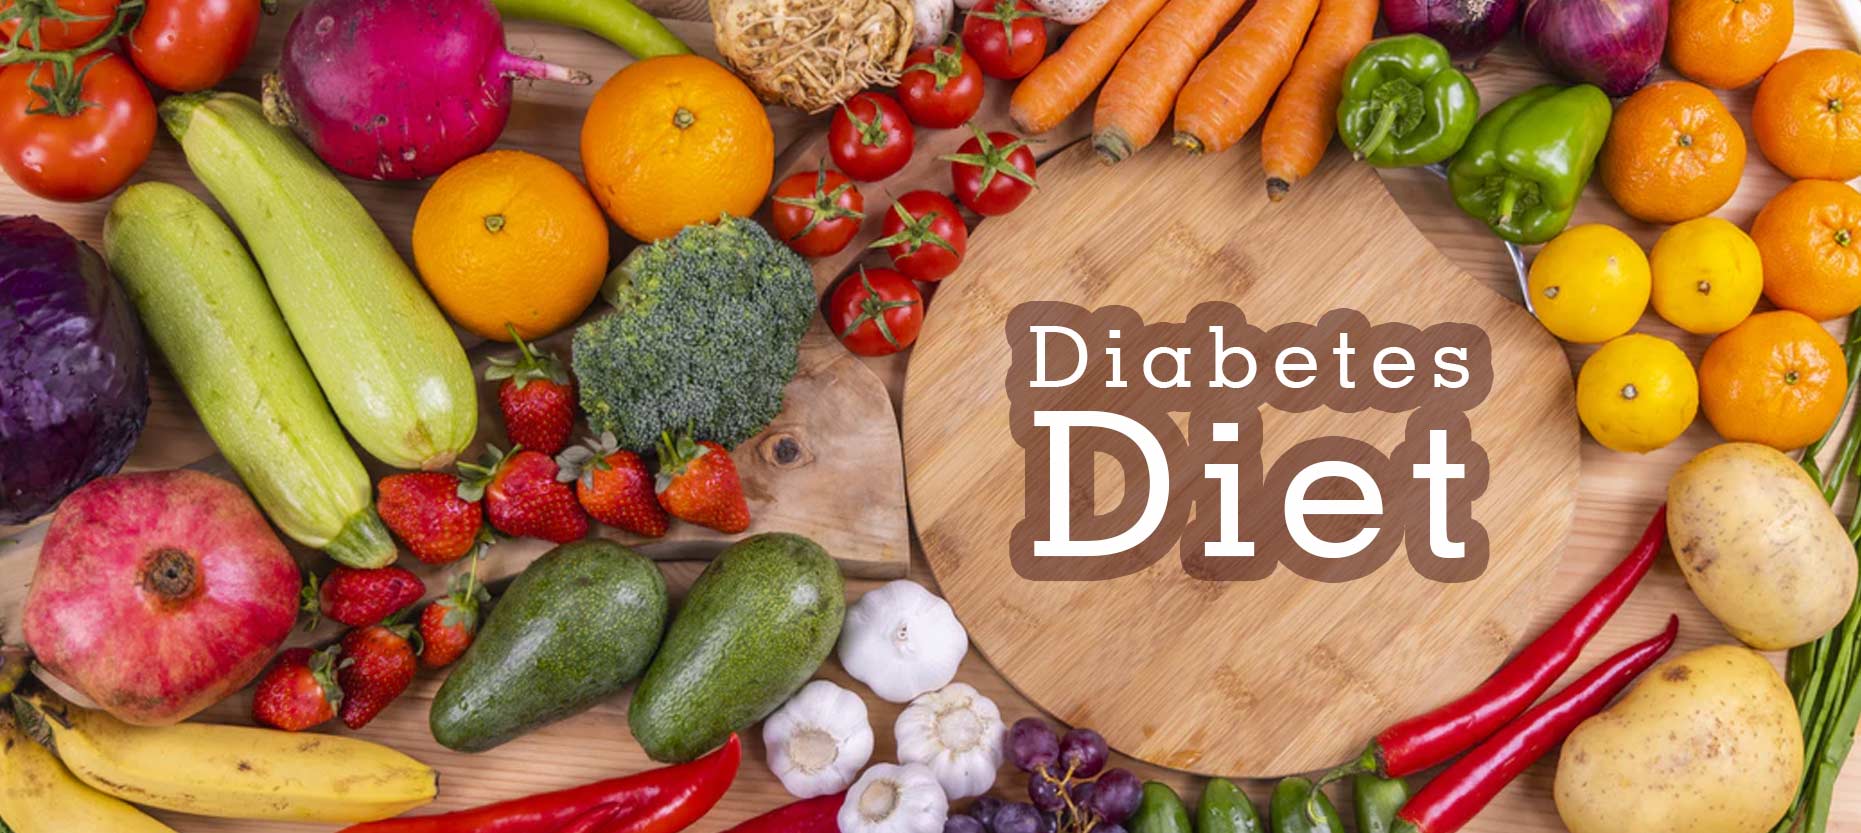 Diet Principles for Diabetes